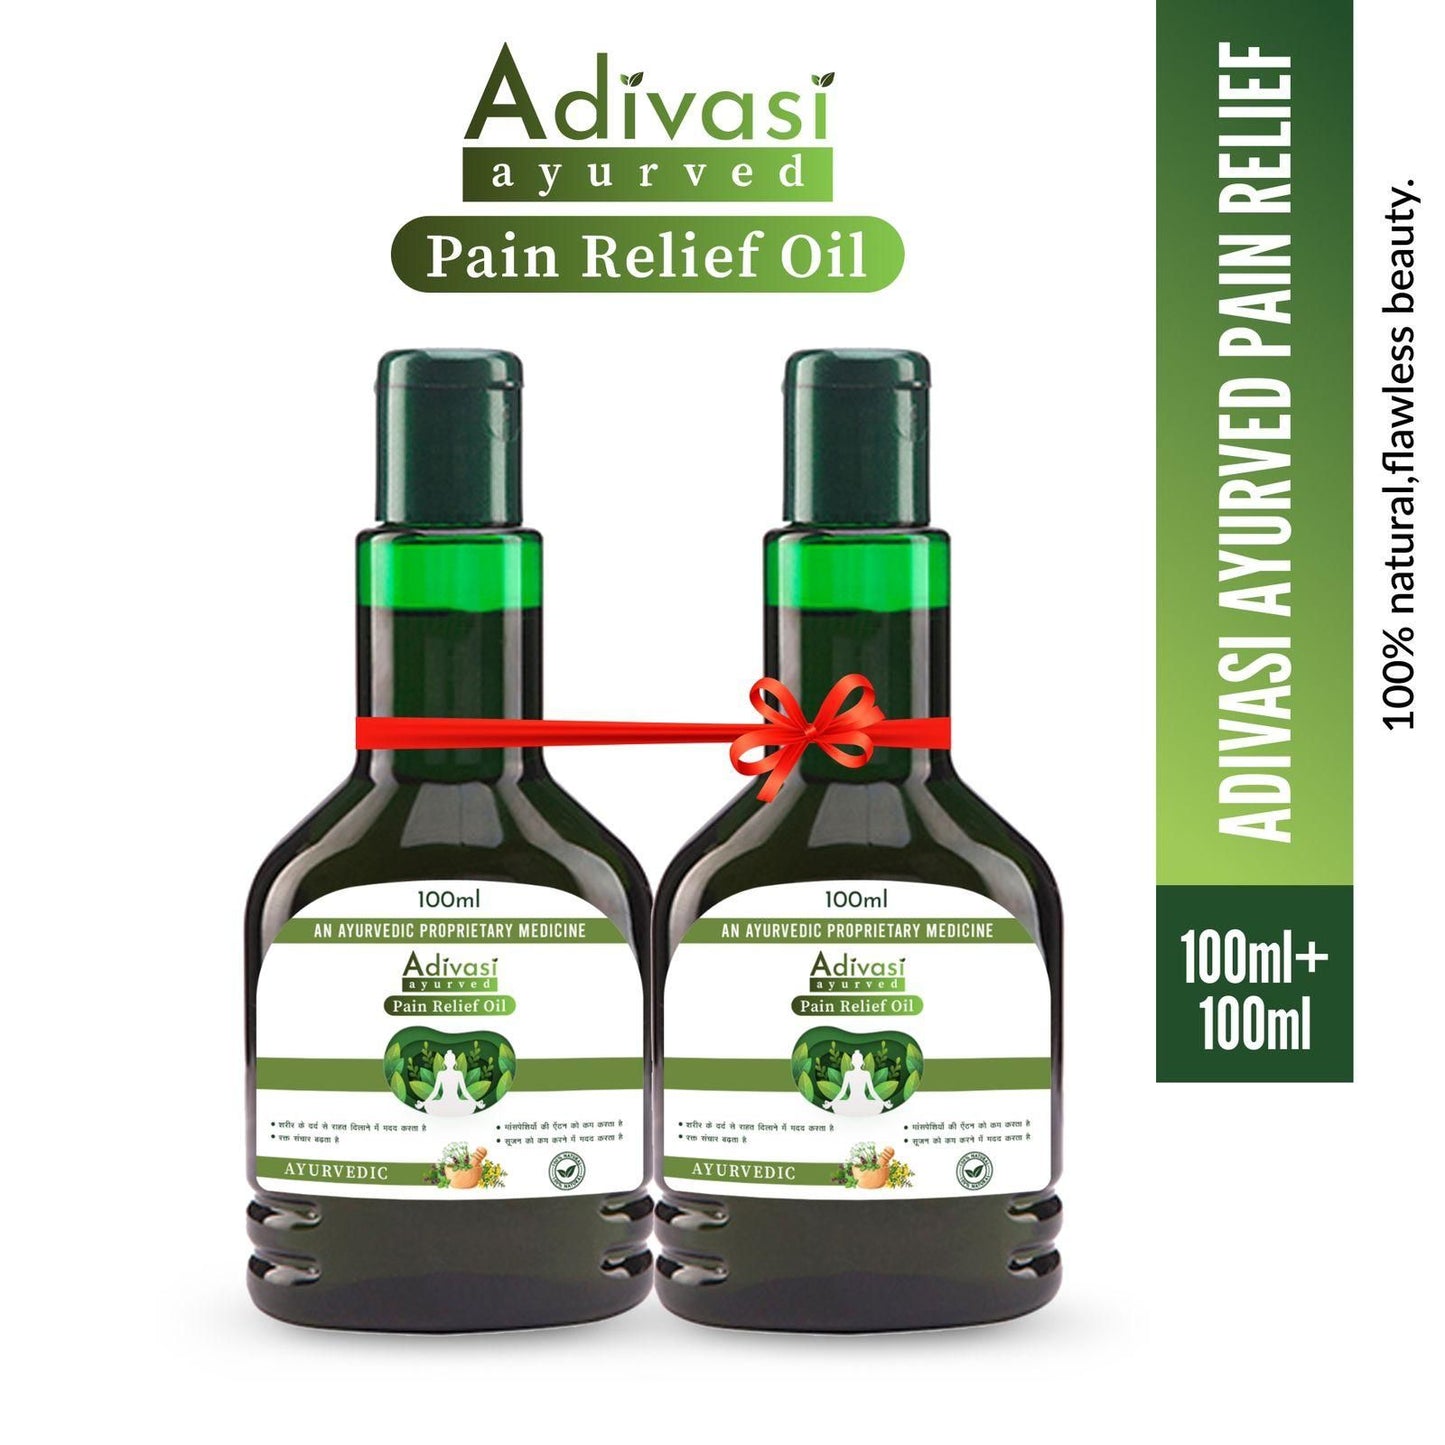 ORIGINAL™ ADIVASI PAIN RELIEF OIL (PACK OF 2) |[4.9 ⭐⭐⭐⭐⭐ 100,999 REVIEWS]